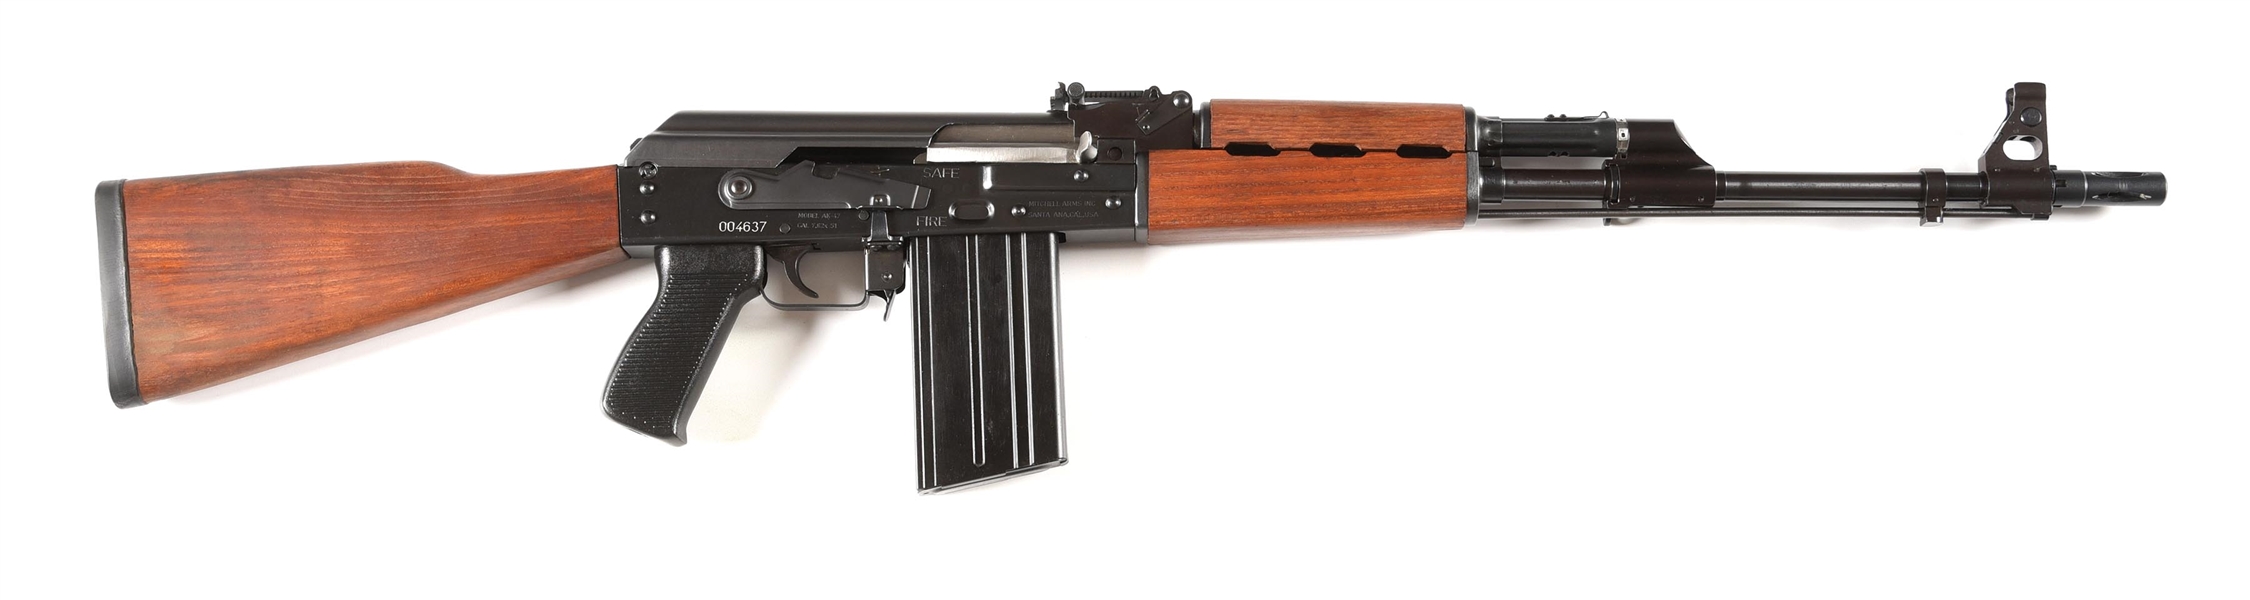 (M) ZASTAVA MODEL AK-47 M77 PATTERN SEMI-AUTOMATIC RIFLE IN 7.62X51MM.